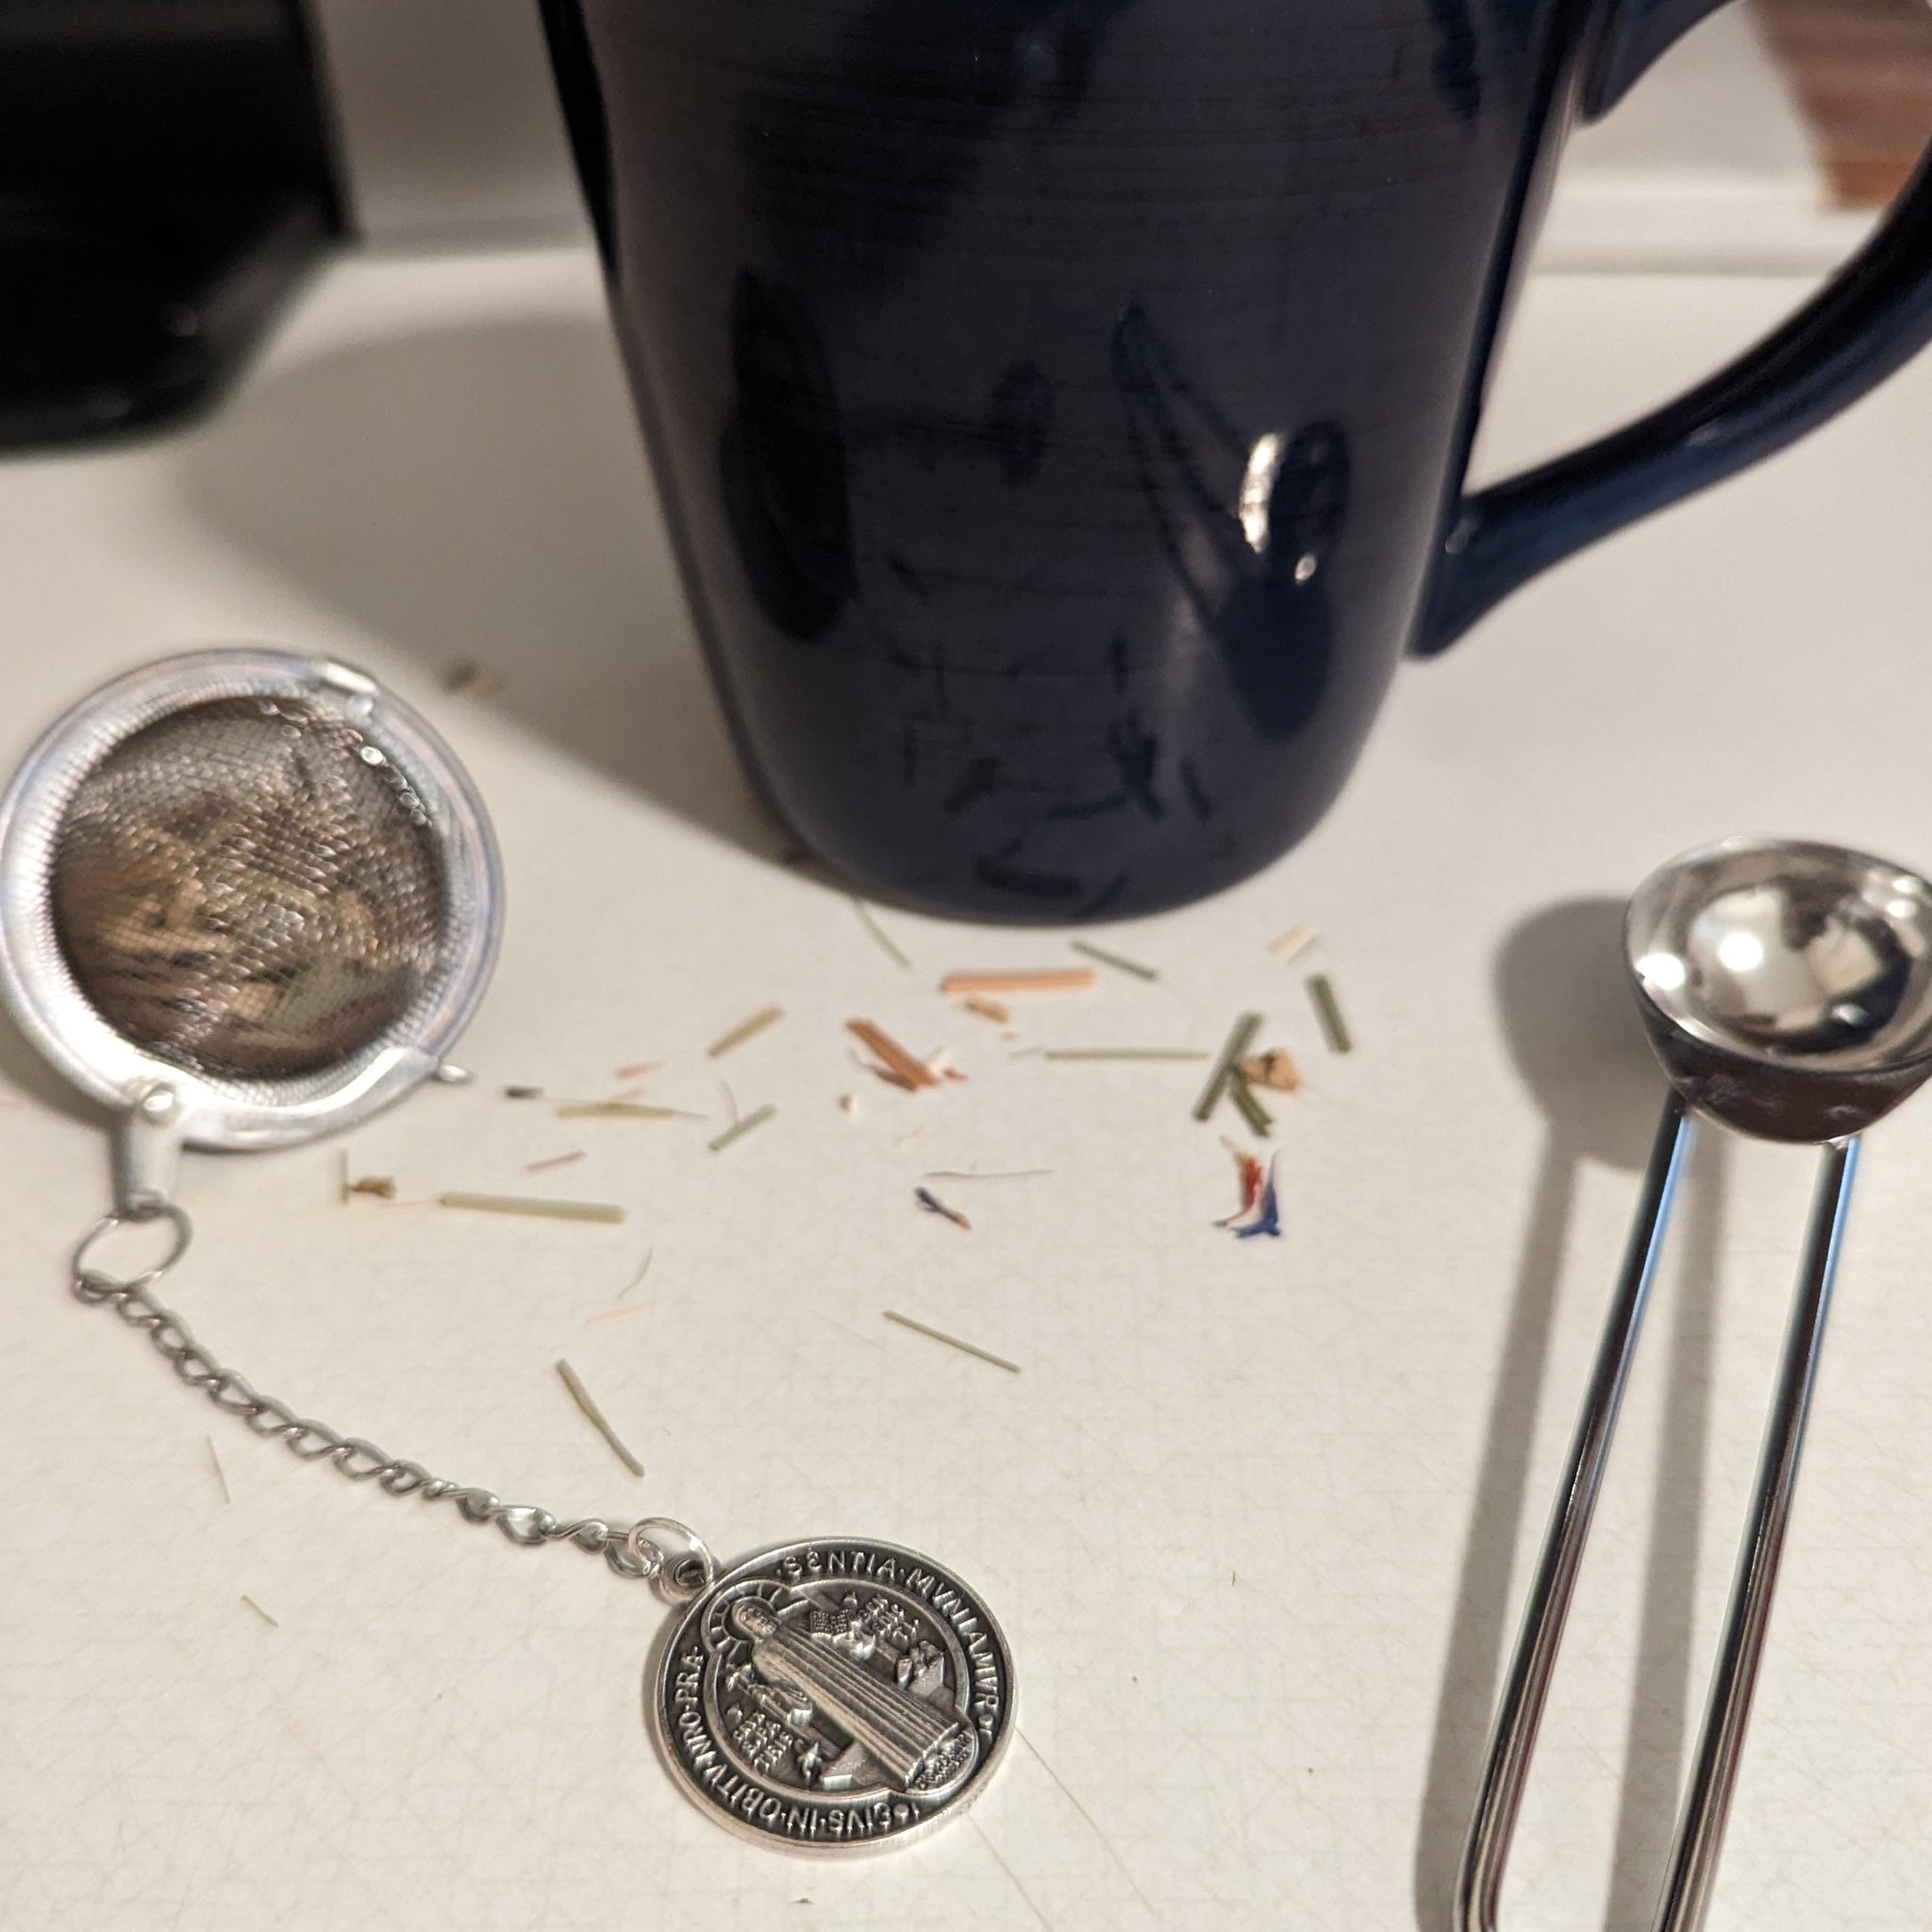 Catholic Saint Medal tea infuser and mug.